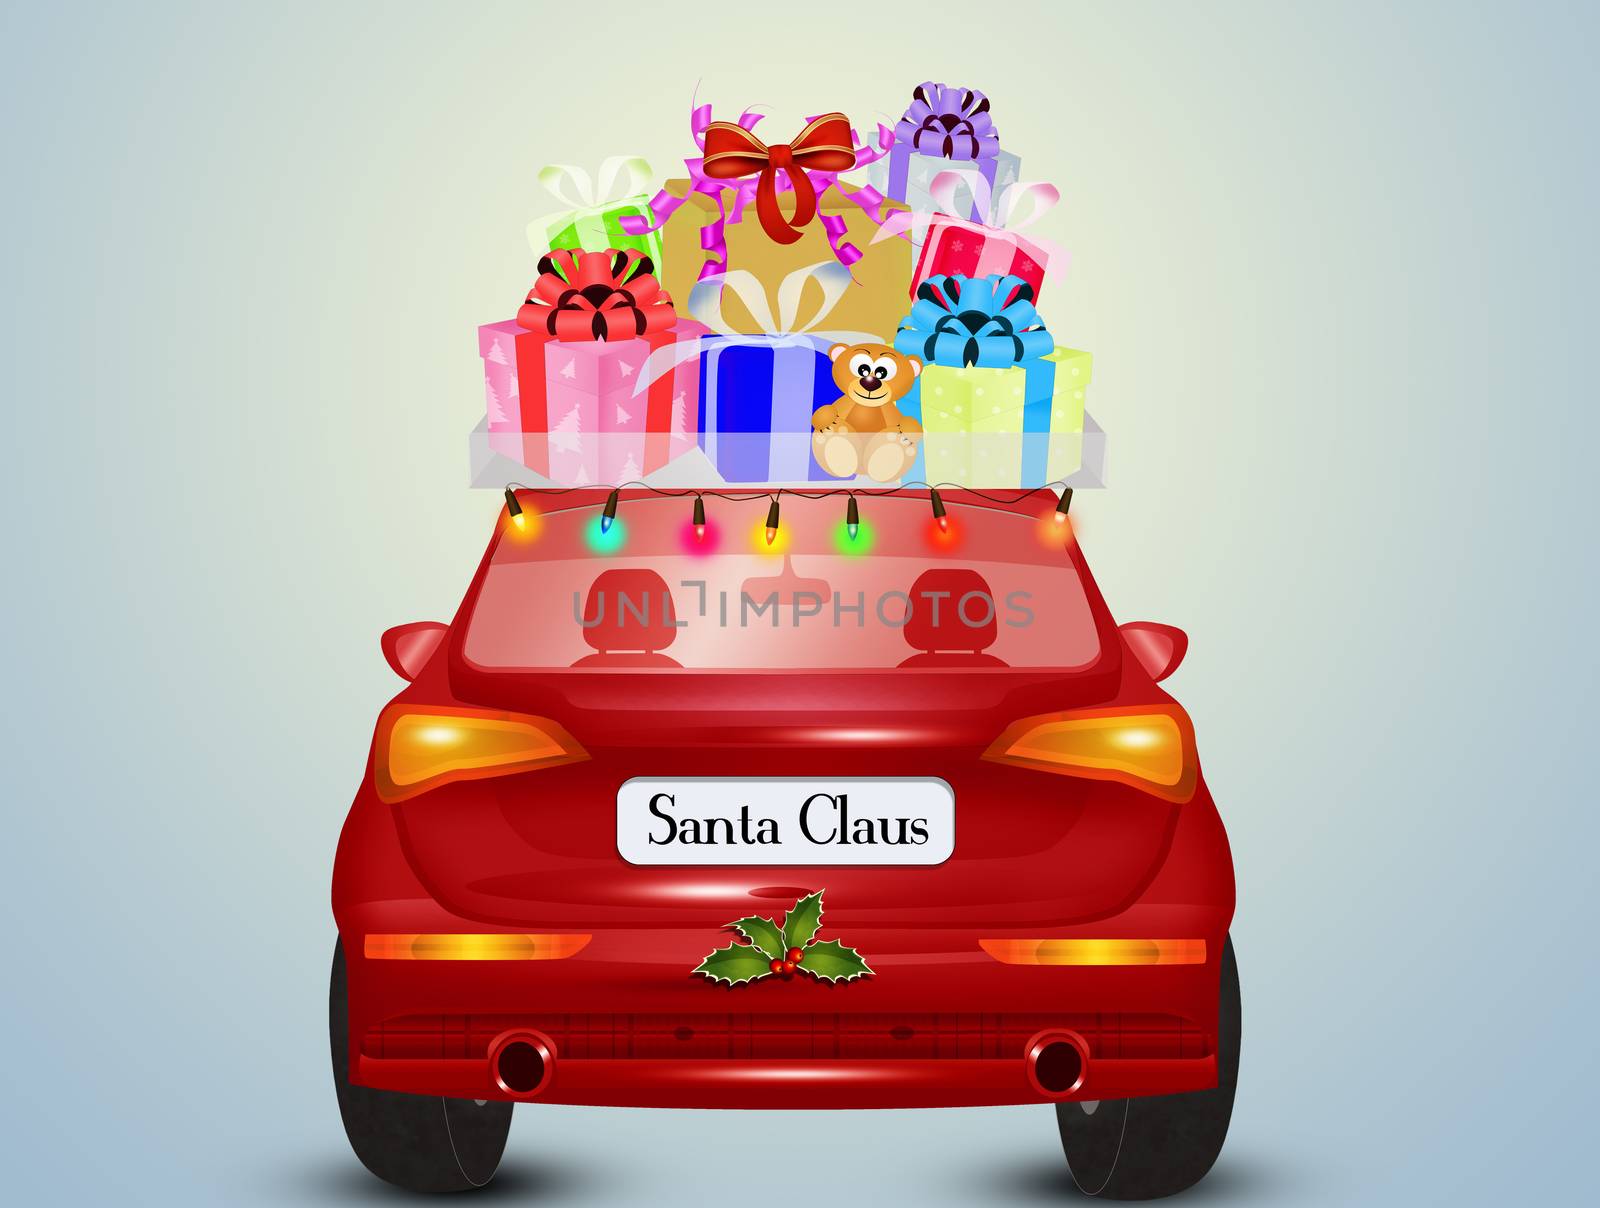 the Santa Claus car brings the gifts by adrenalina